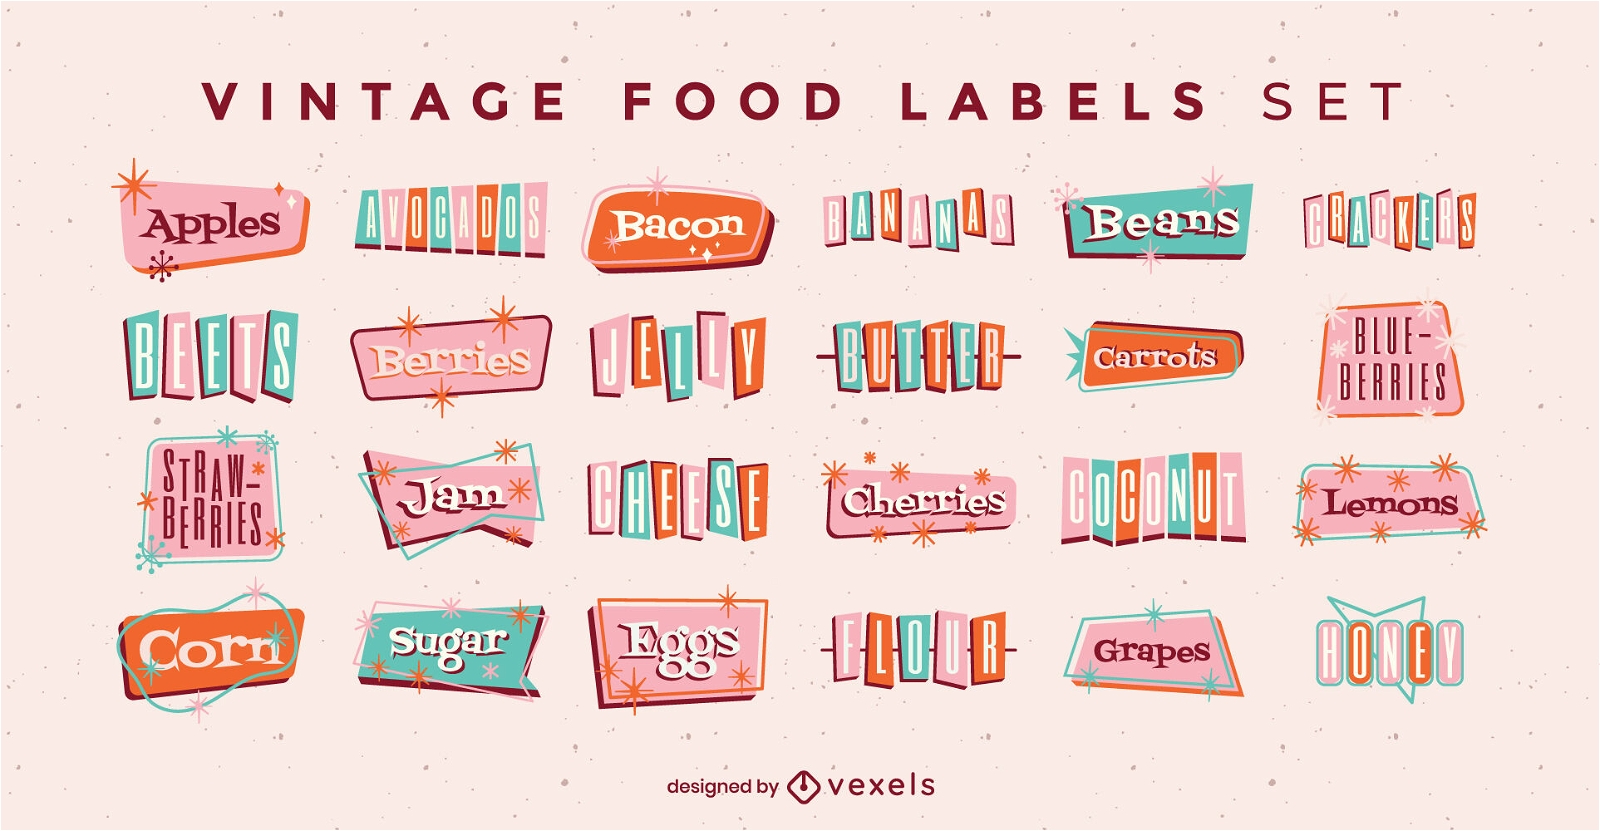 Food ingredients labels vintage set